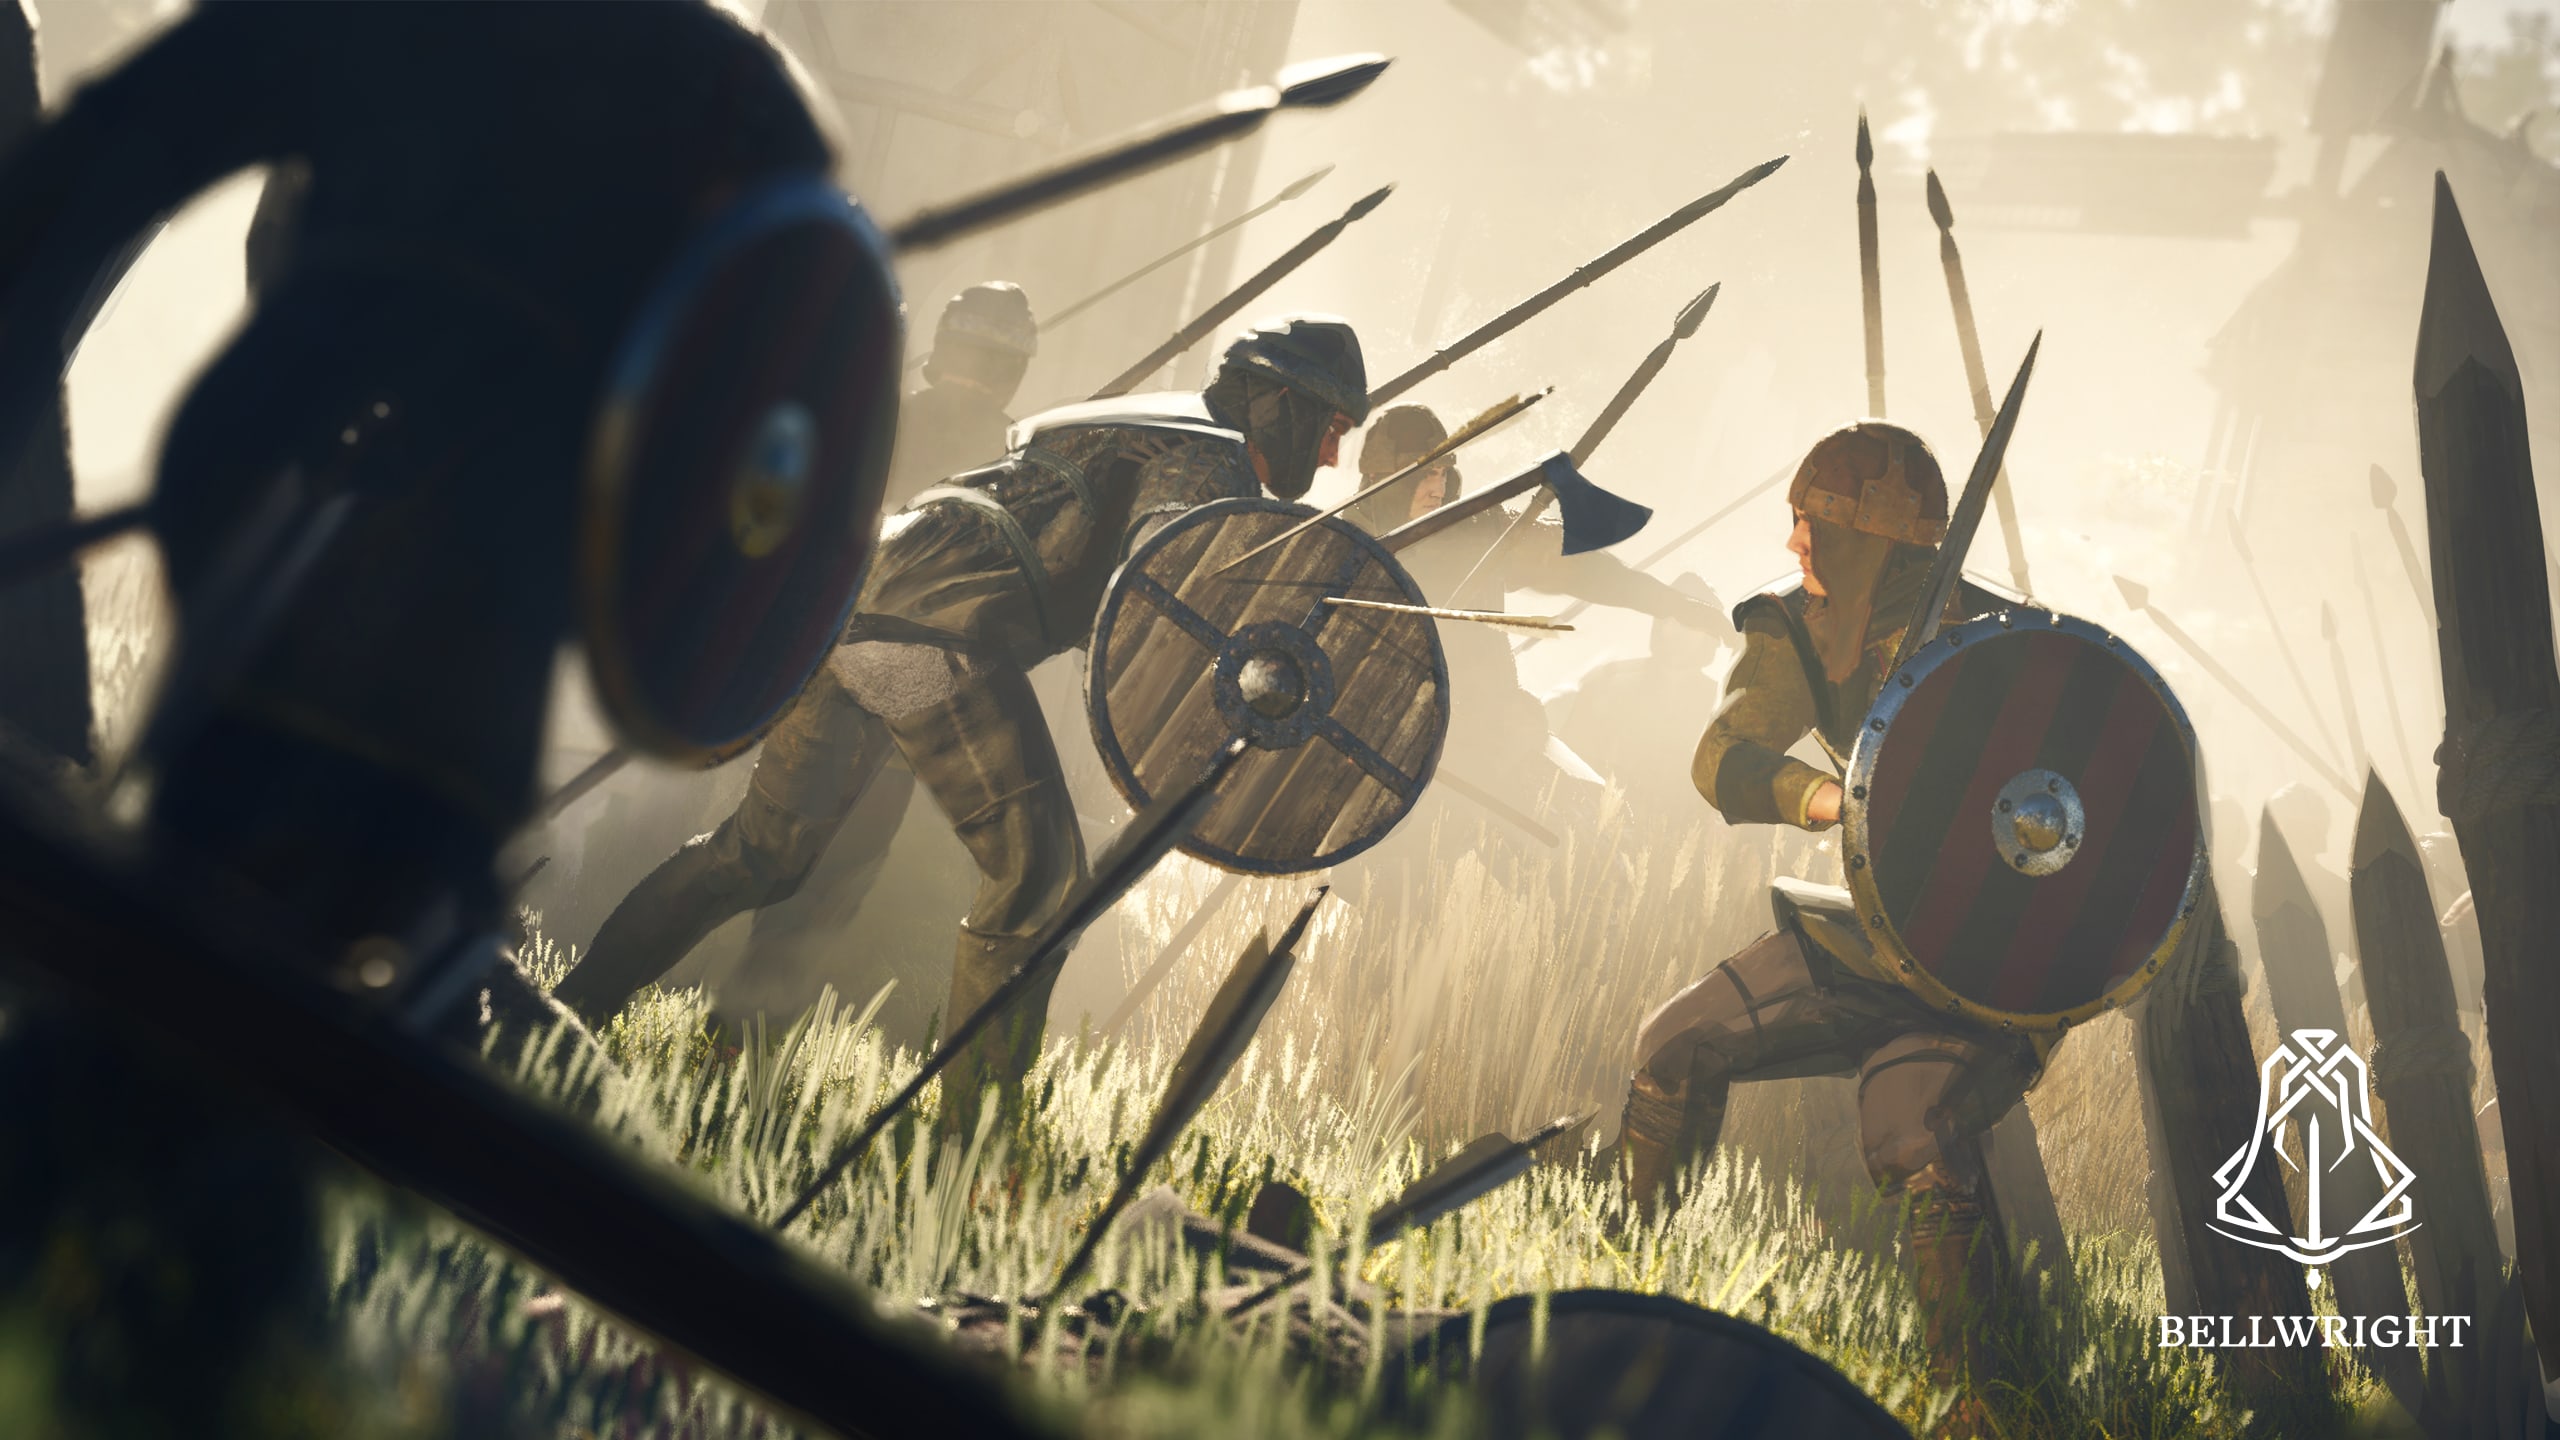 Artwork showing a medieval battle scene.